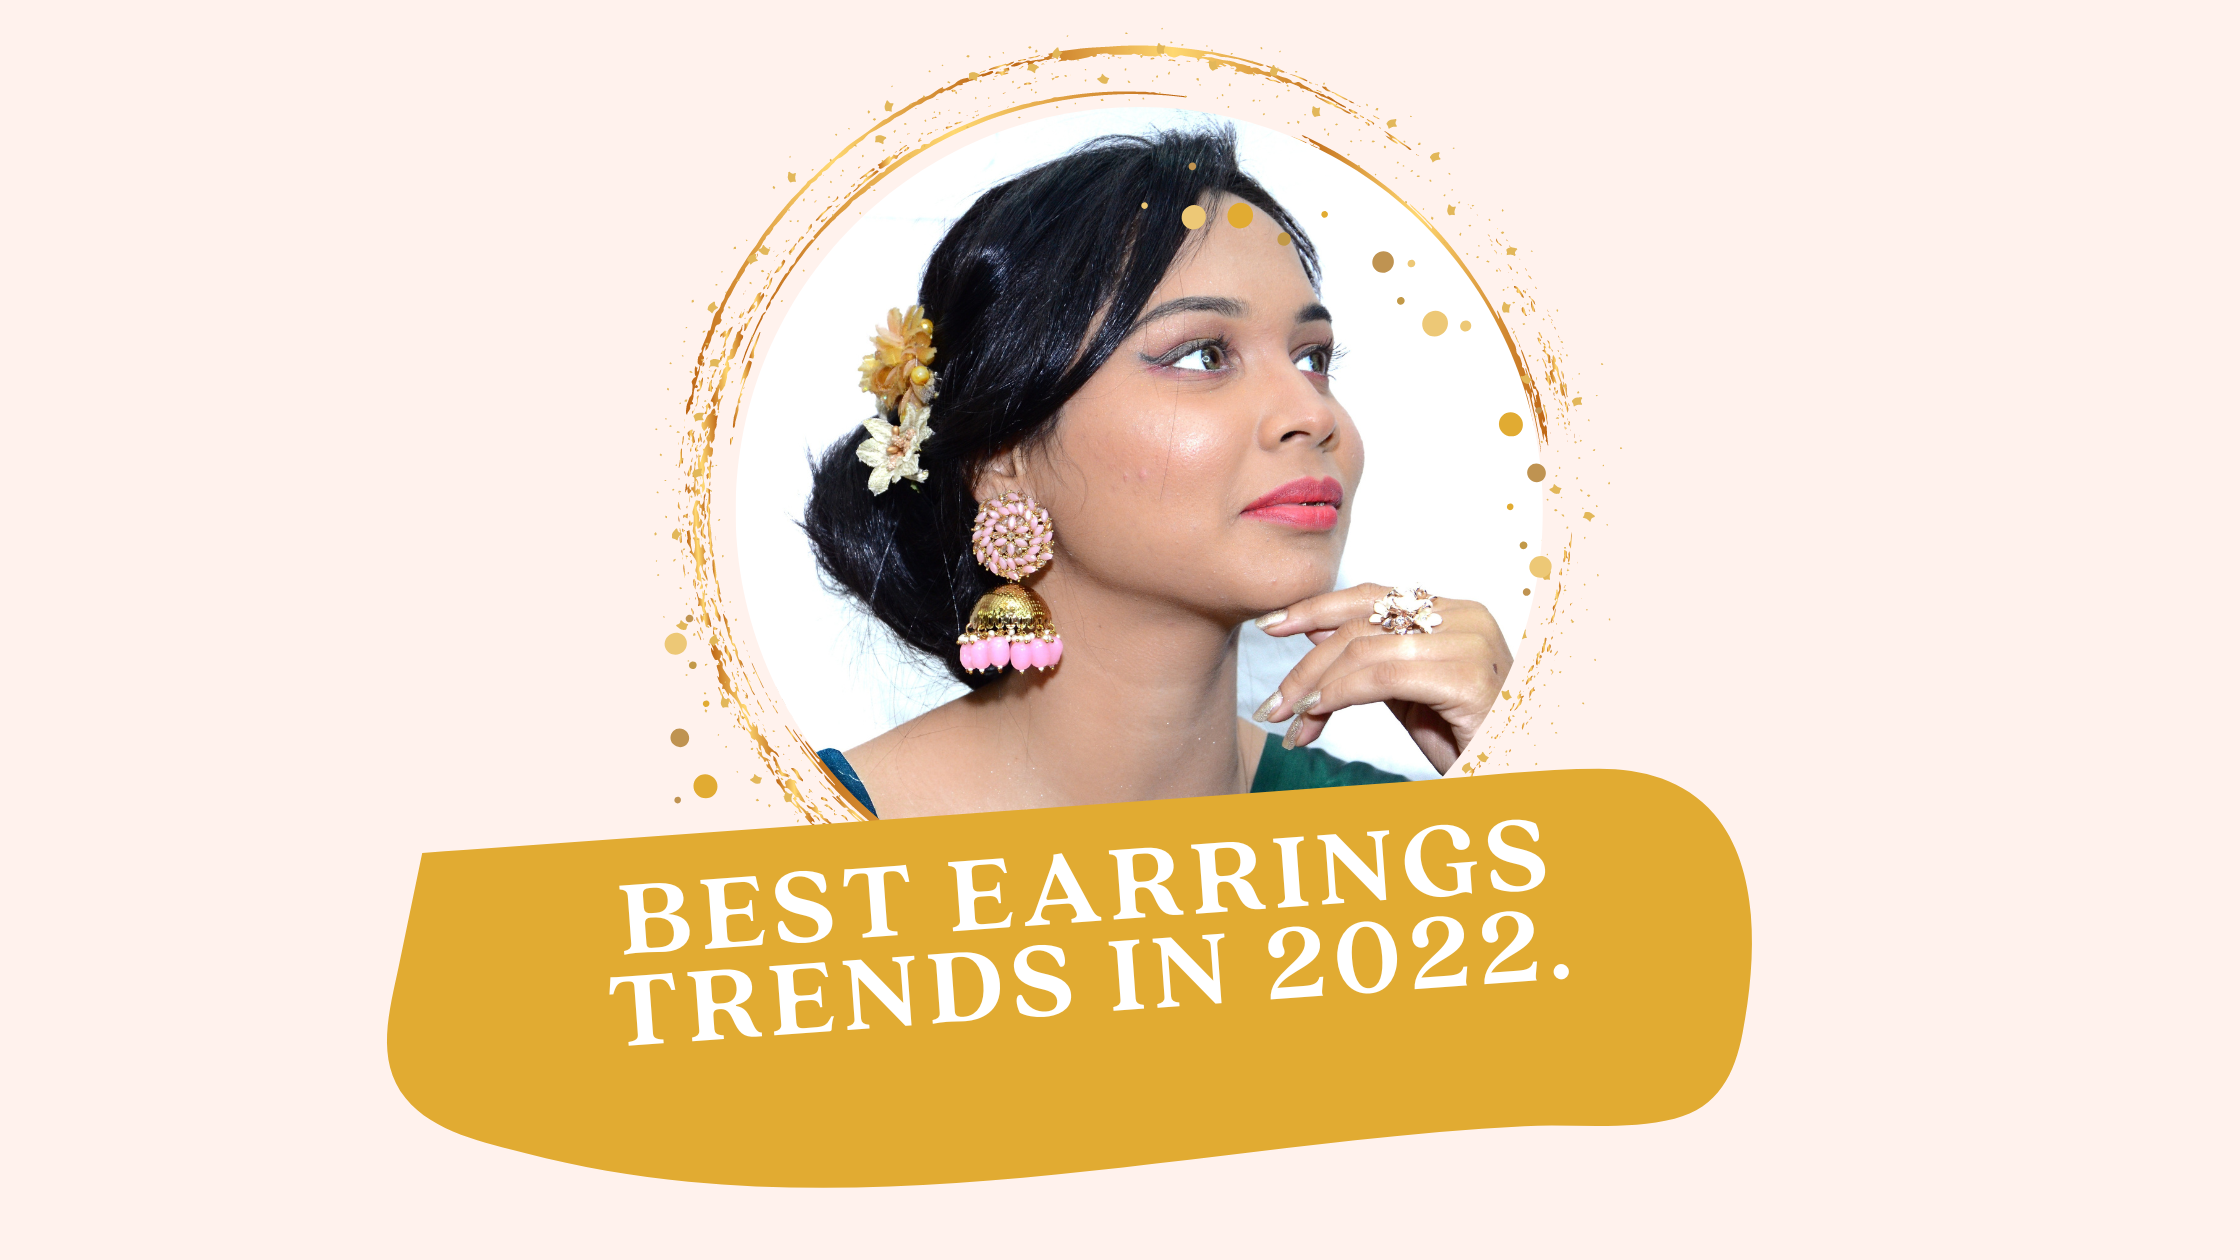 Best earrings trends in 2022.